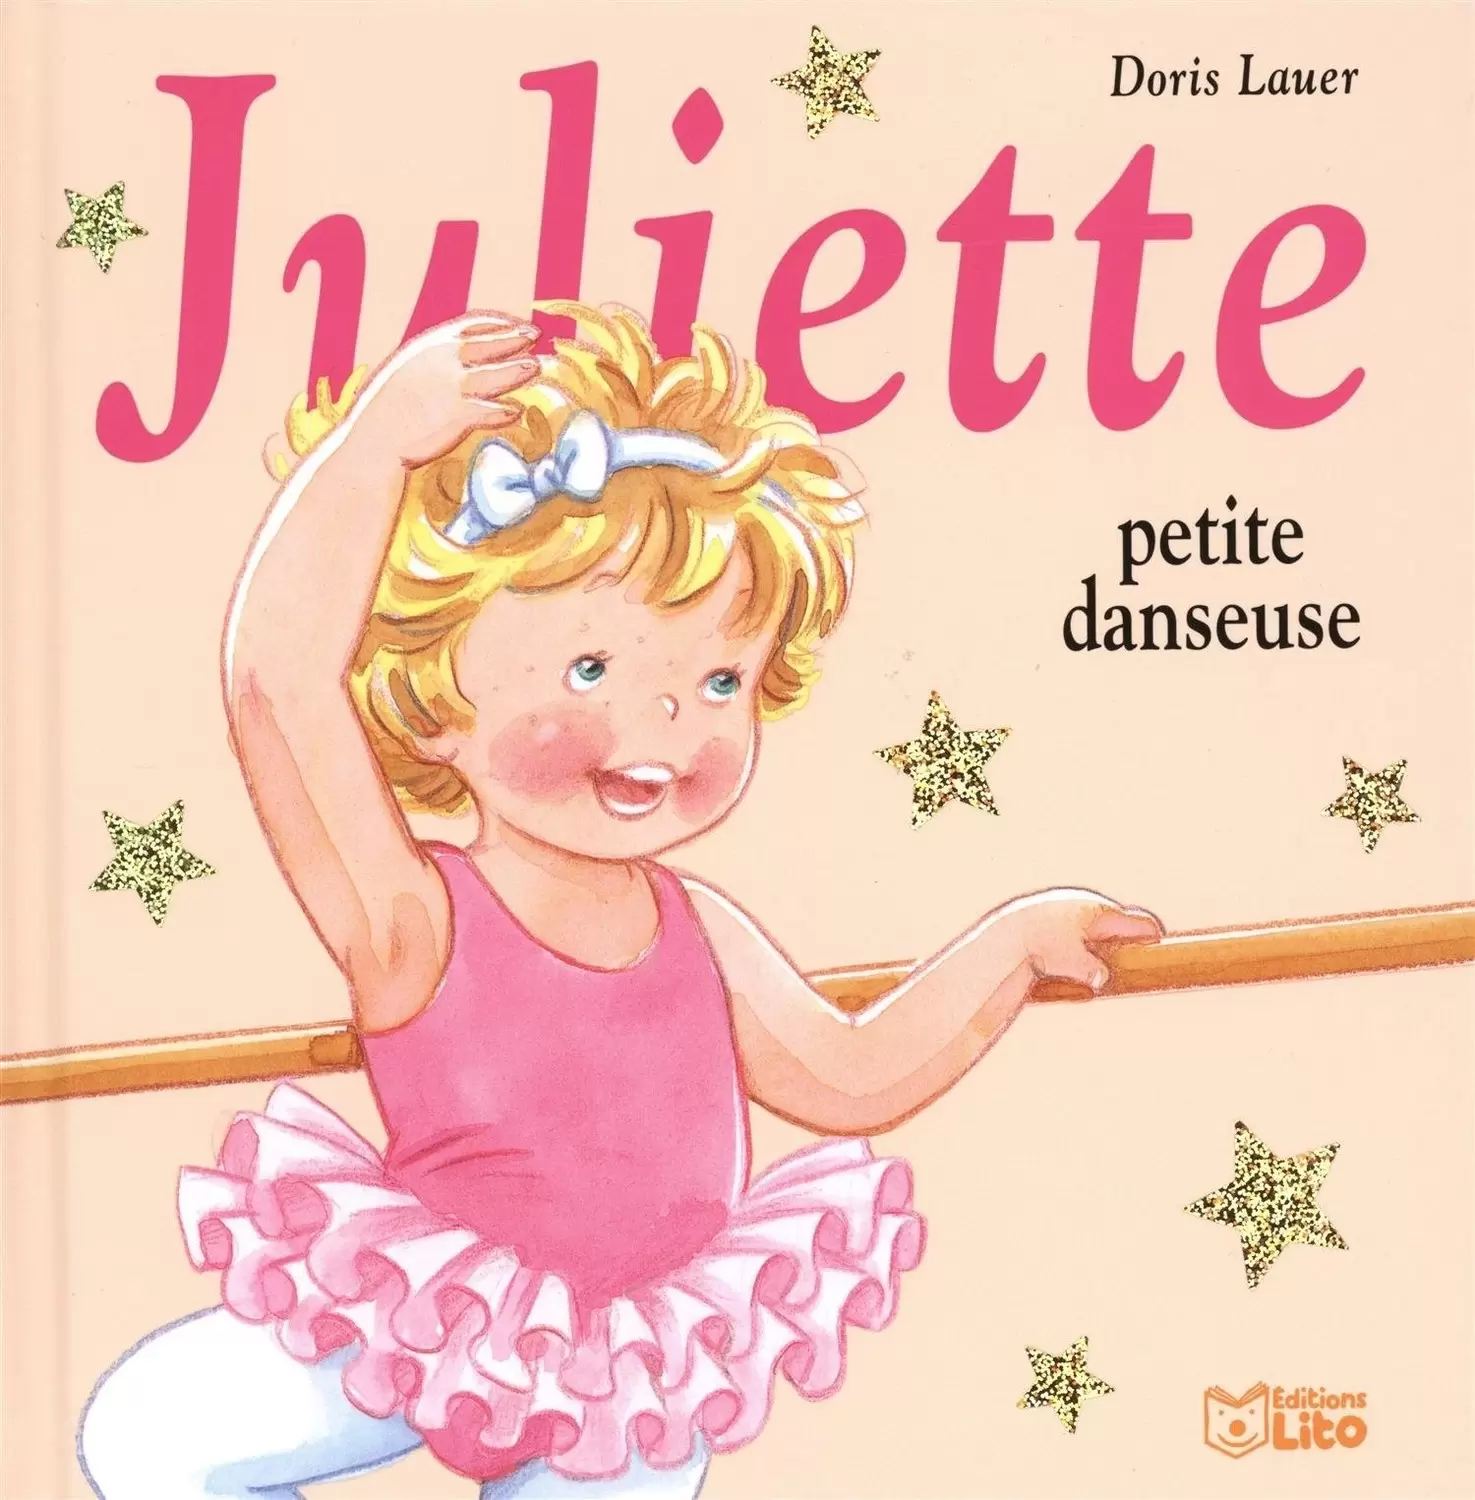 Juliette - Juliette petite danseuse